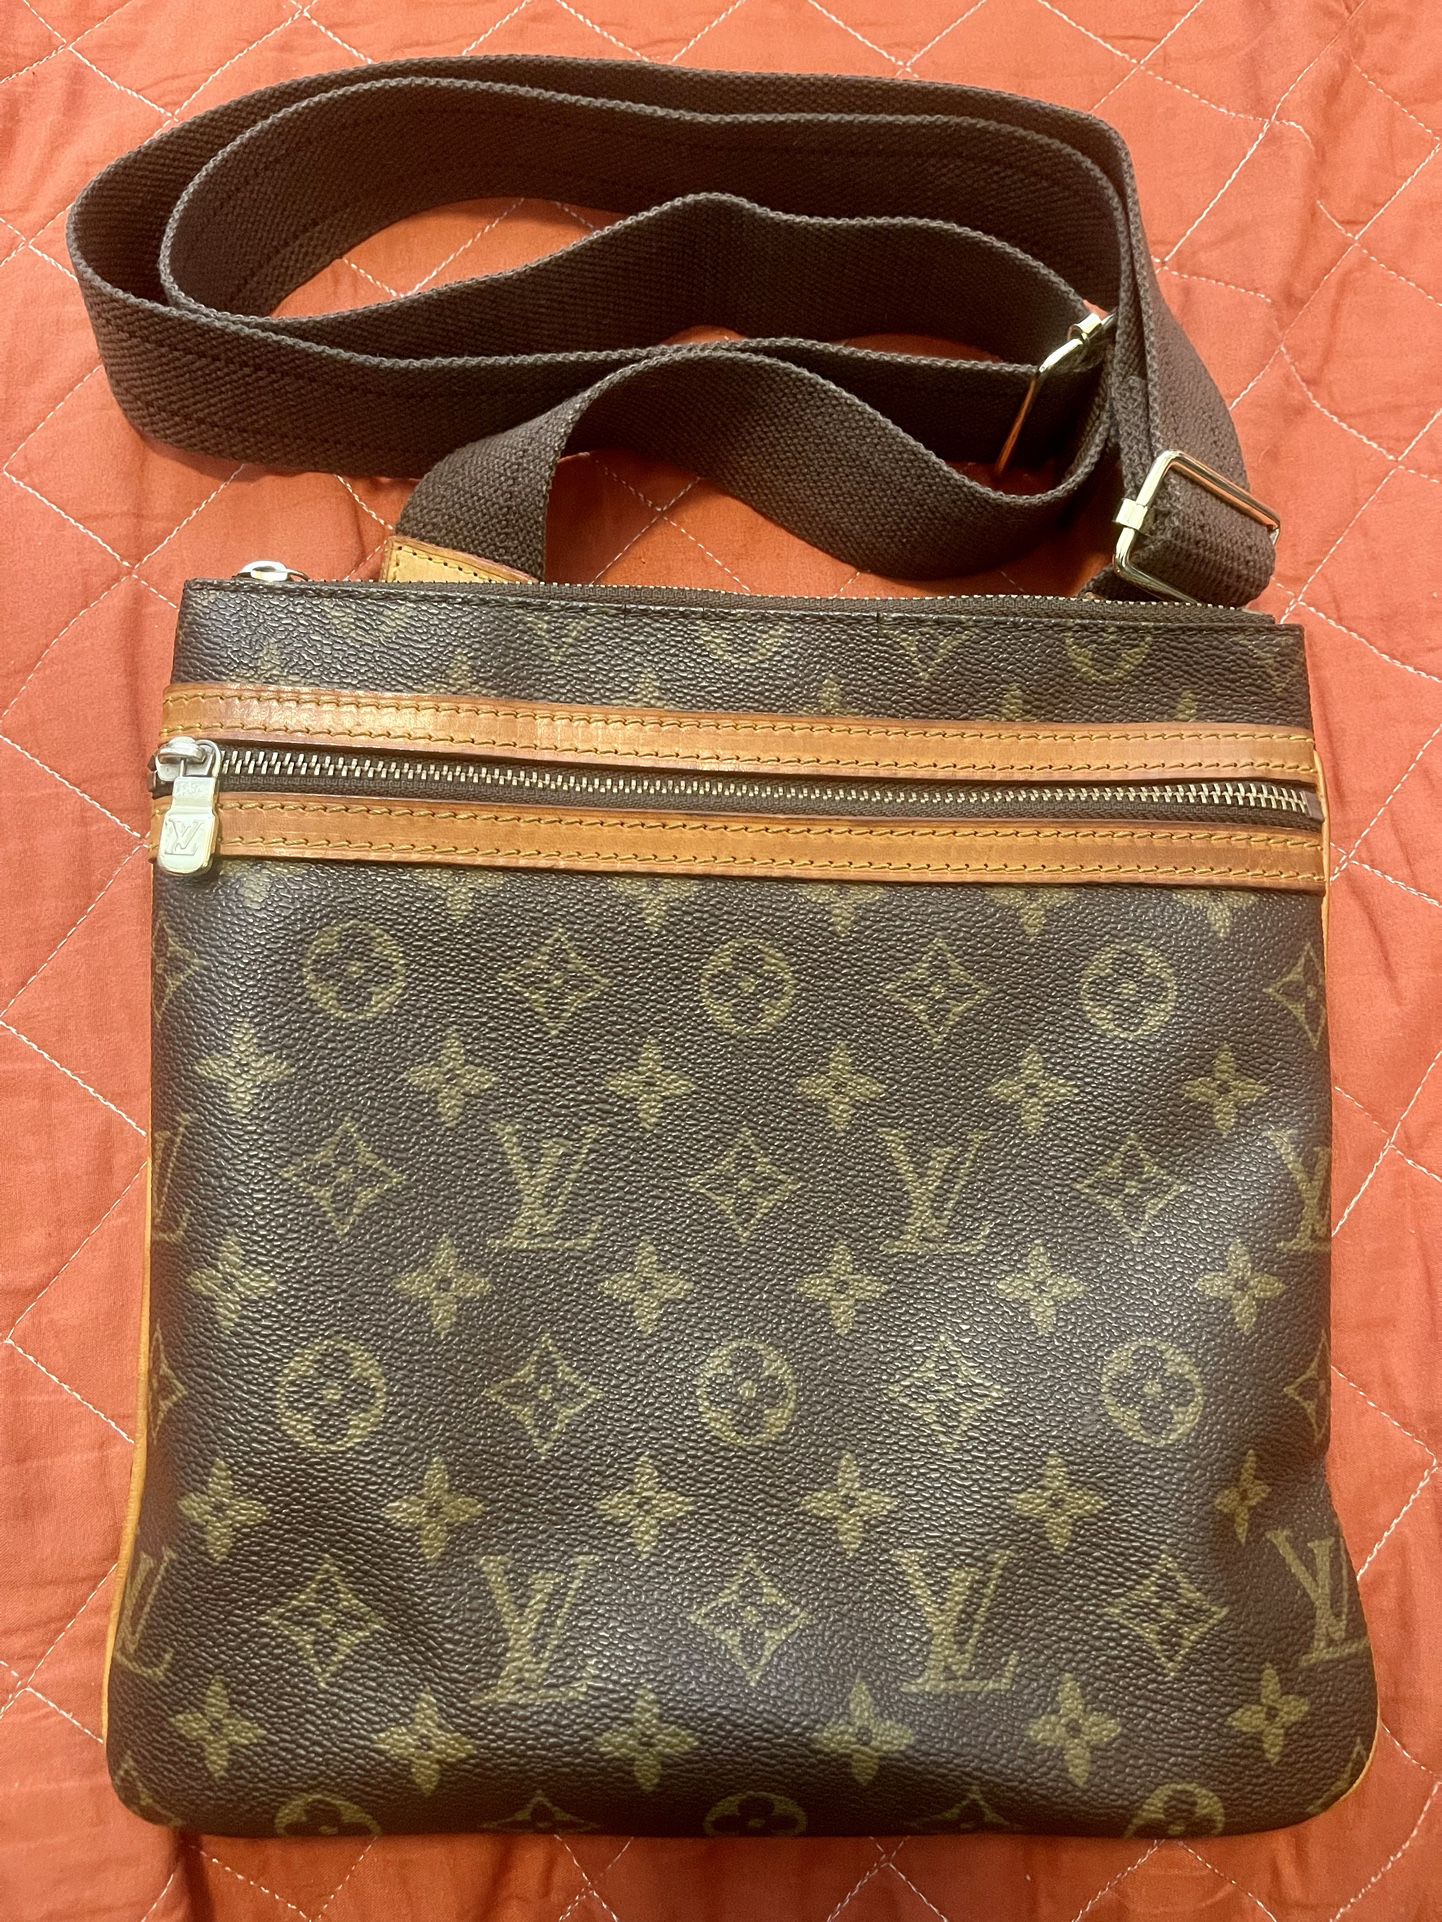 Louis Vuitton Handbag for Sale in Santa Barbara, CA - OfferUp